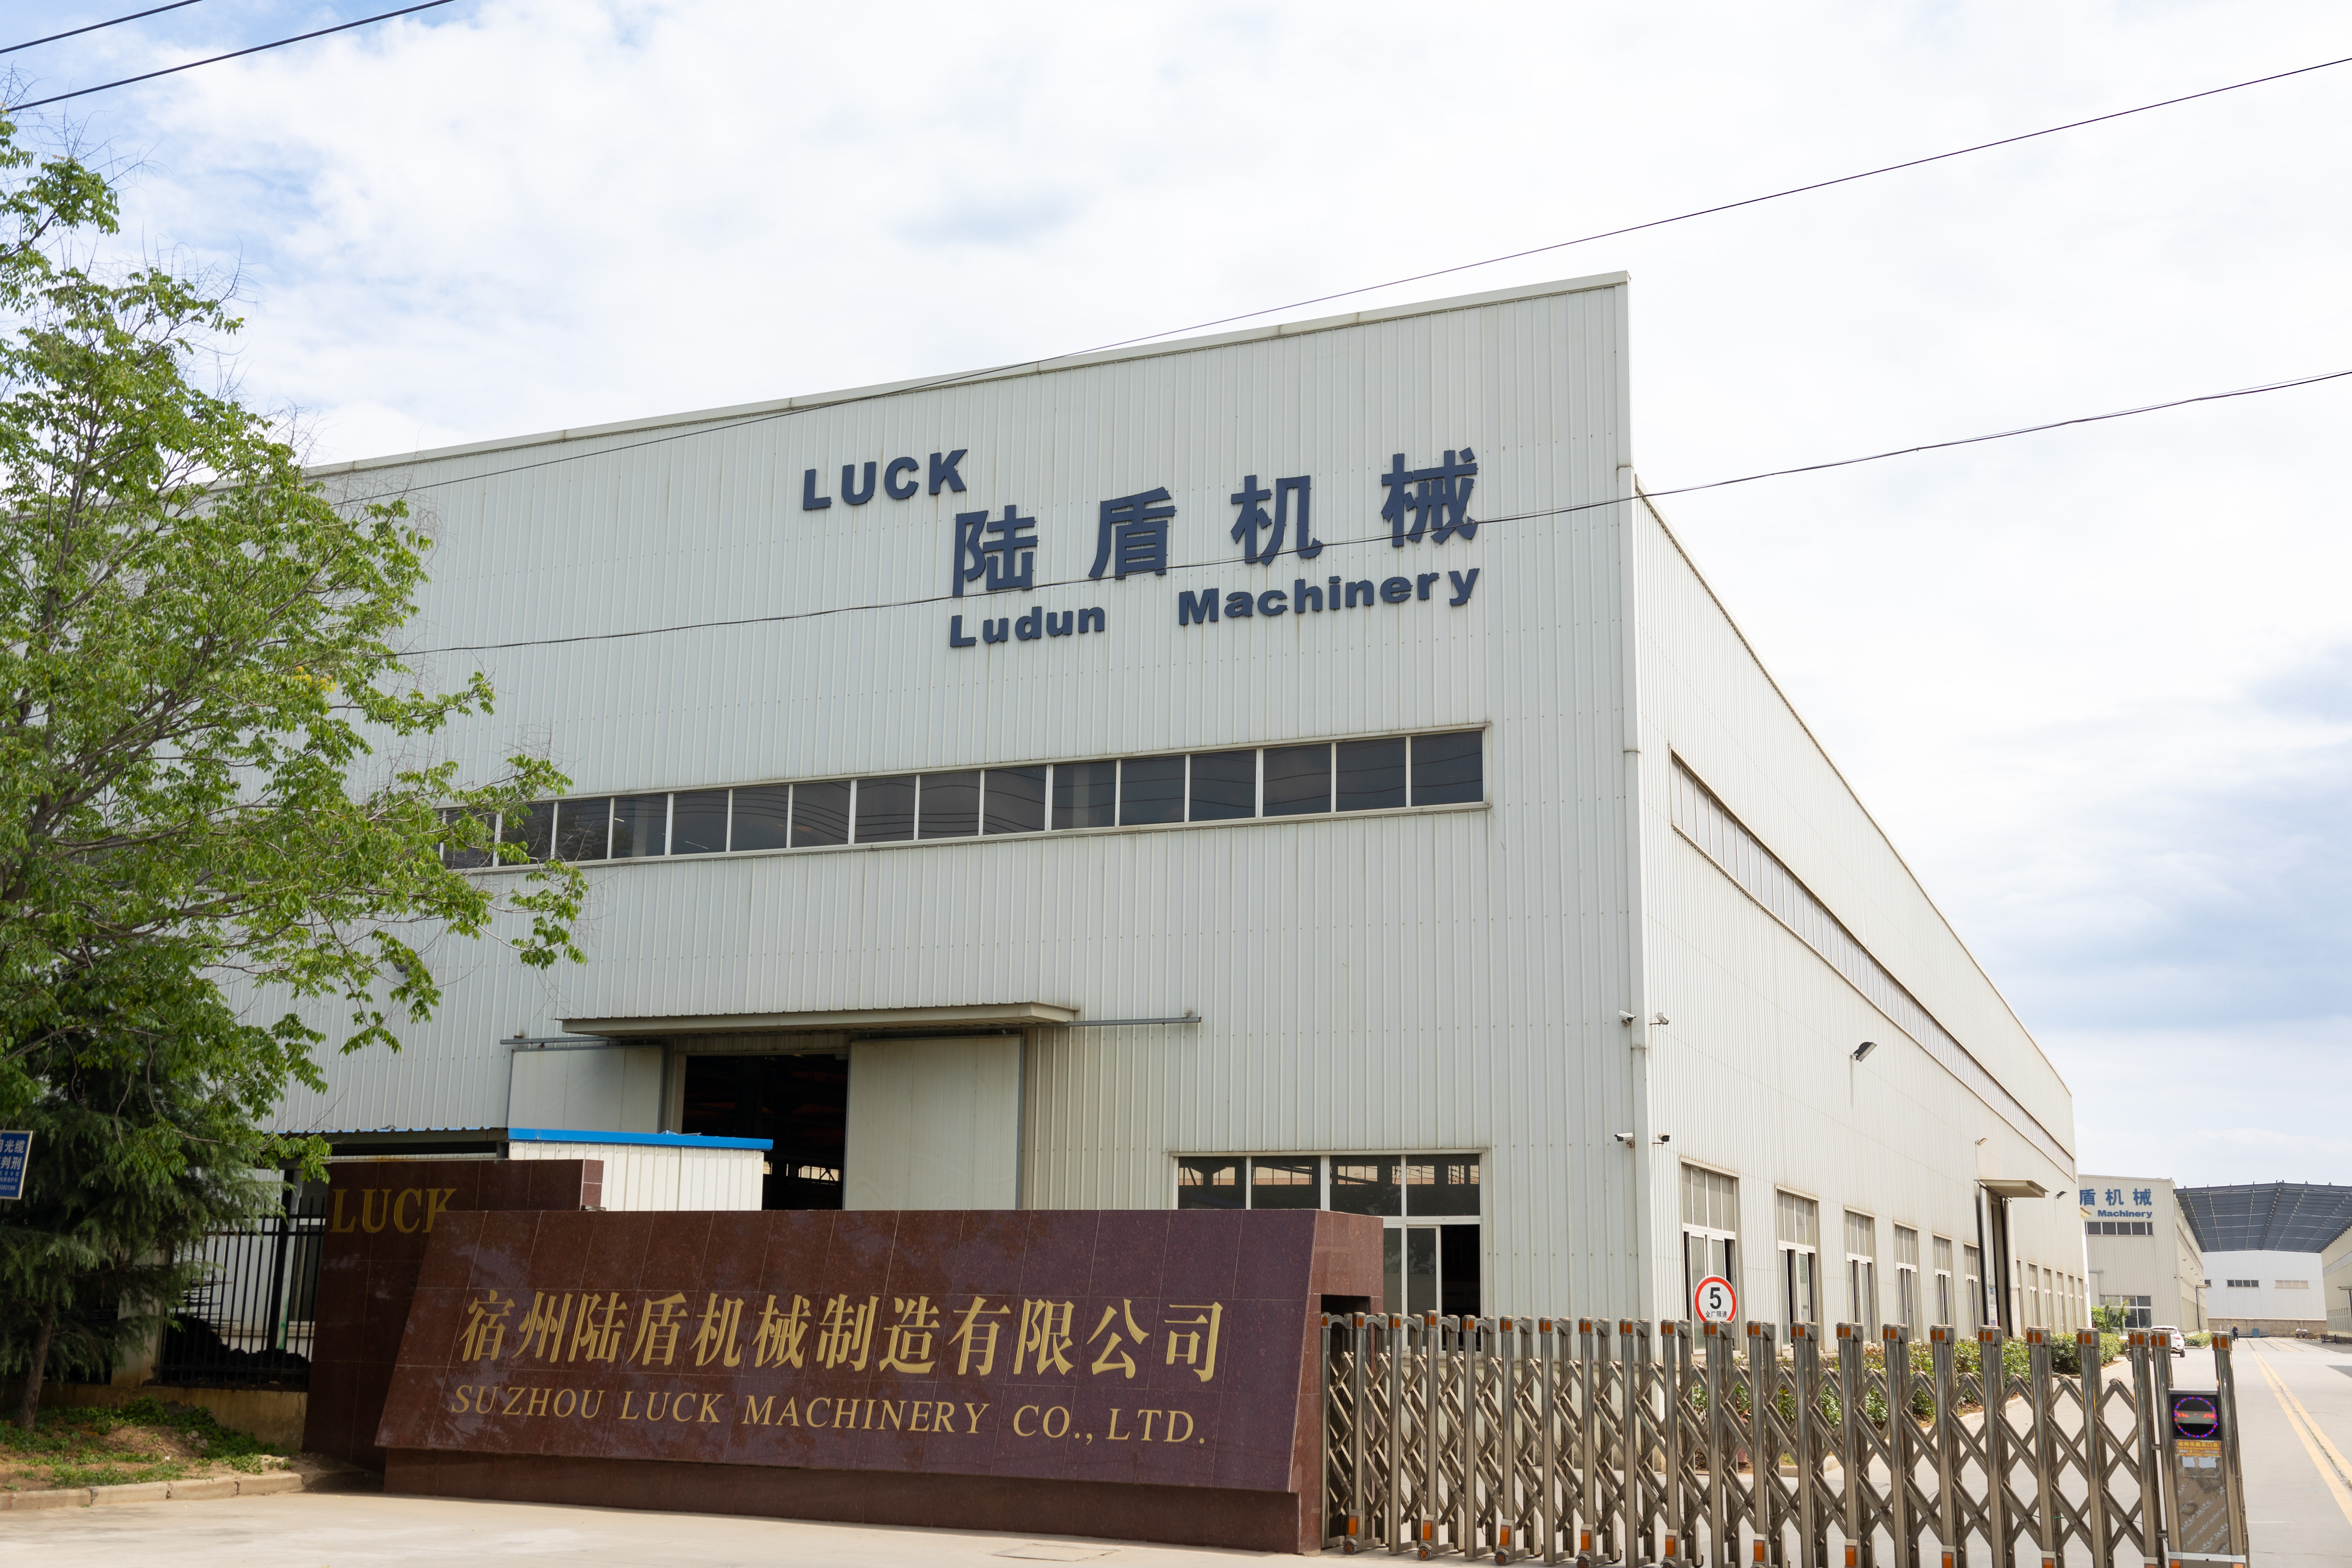 Case Study | LUCK Machinery (China): Una Empresa Joven con una Dirección Avanzada